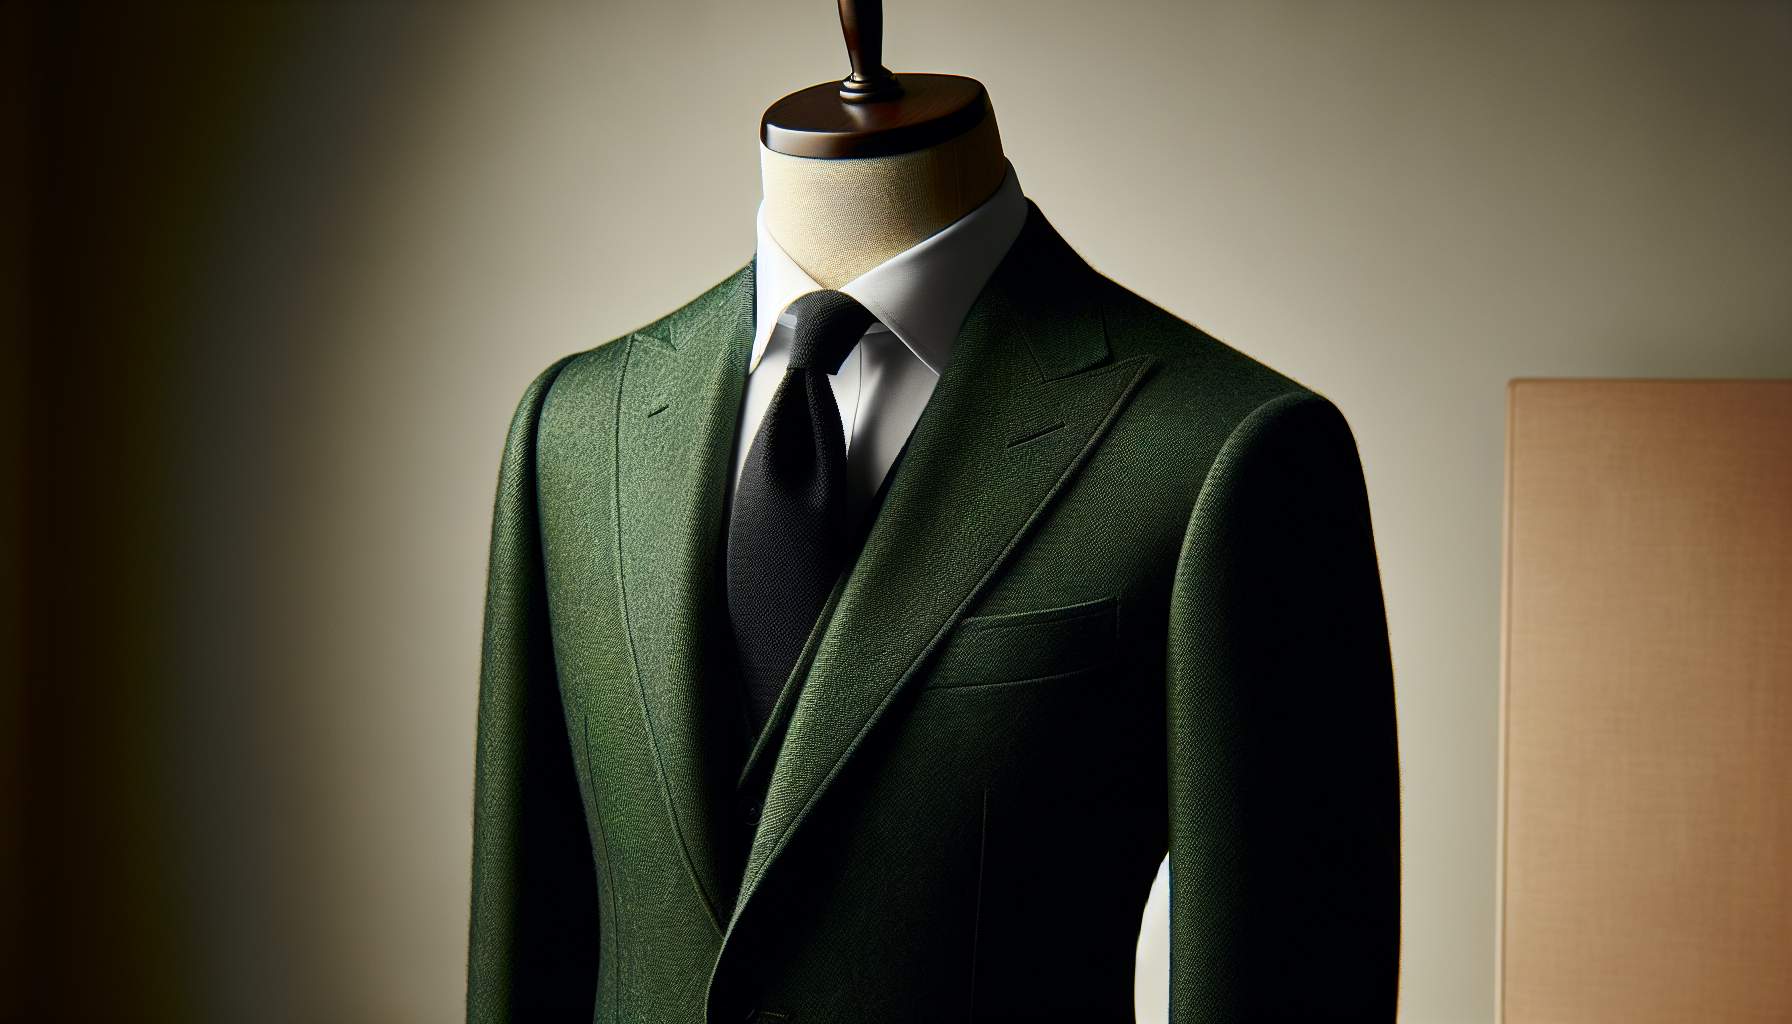 Veste costume verte homme : comment adopter l'élégance au quotidien